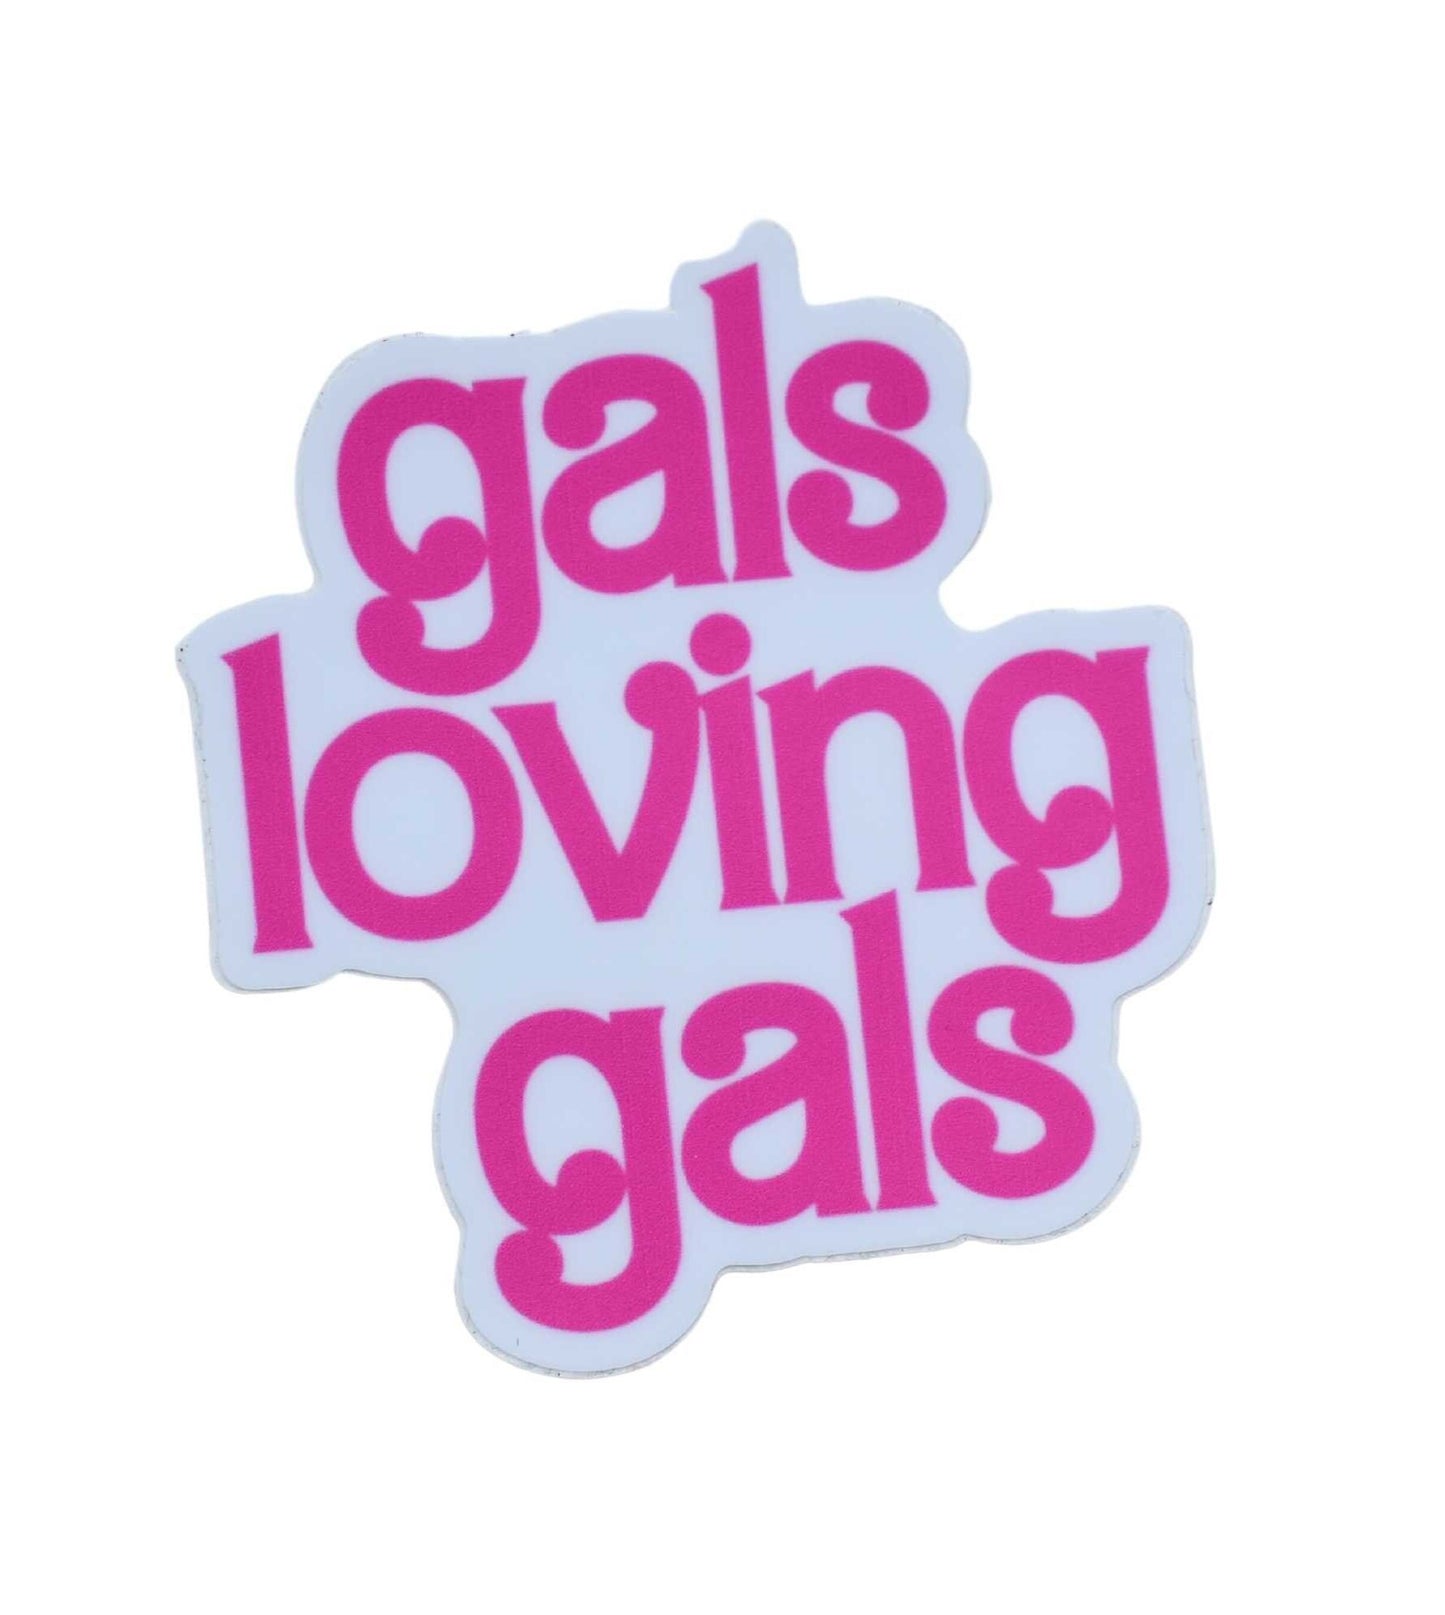 Gals loving Gals Sticker, Lesbian Pride Sticker, LGBTQ+ Pride, Barbie theme, Waterbottle Sticker, Laptop sticker, Funny sticker